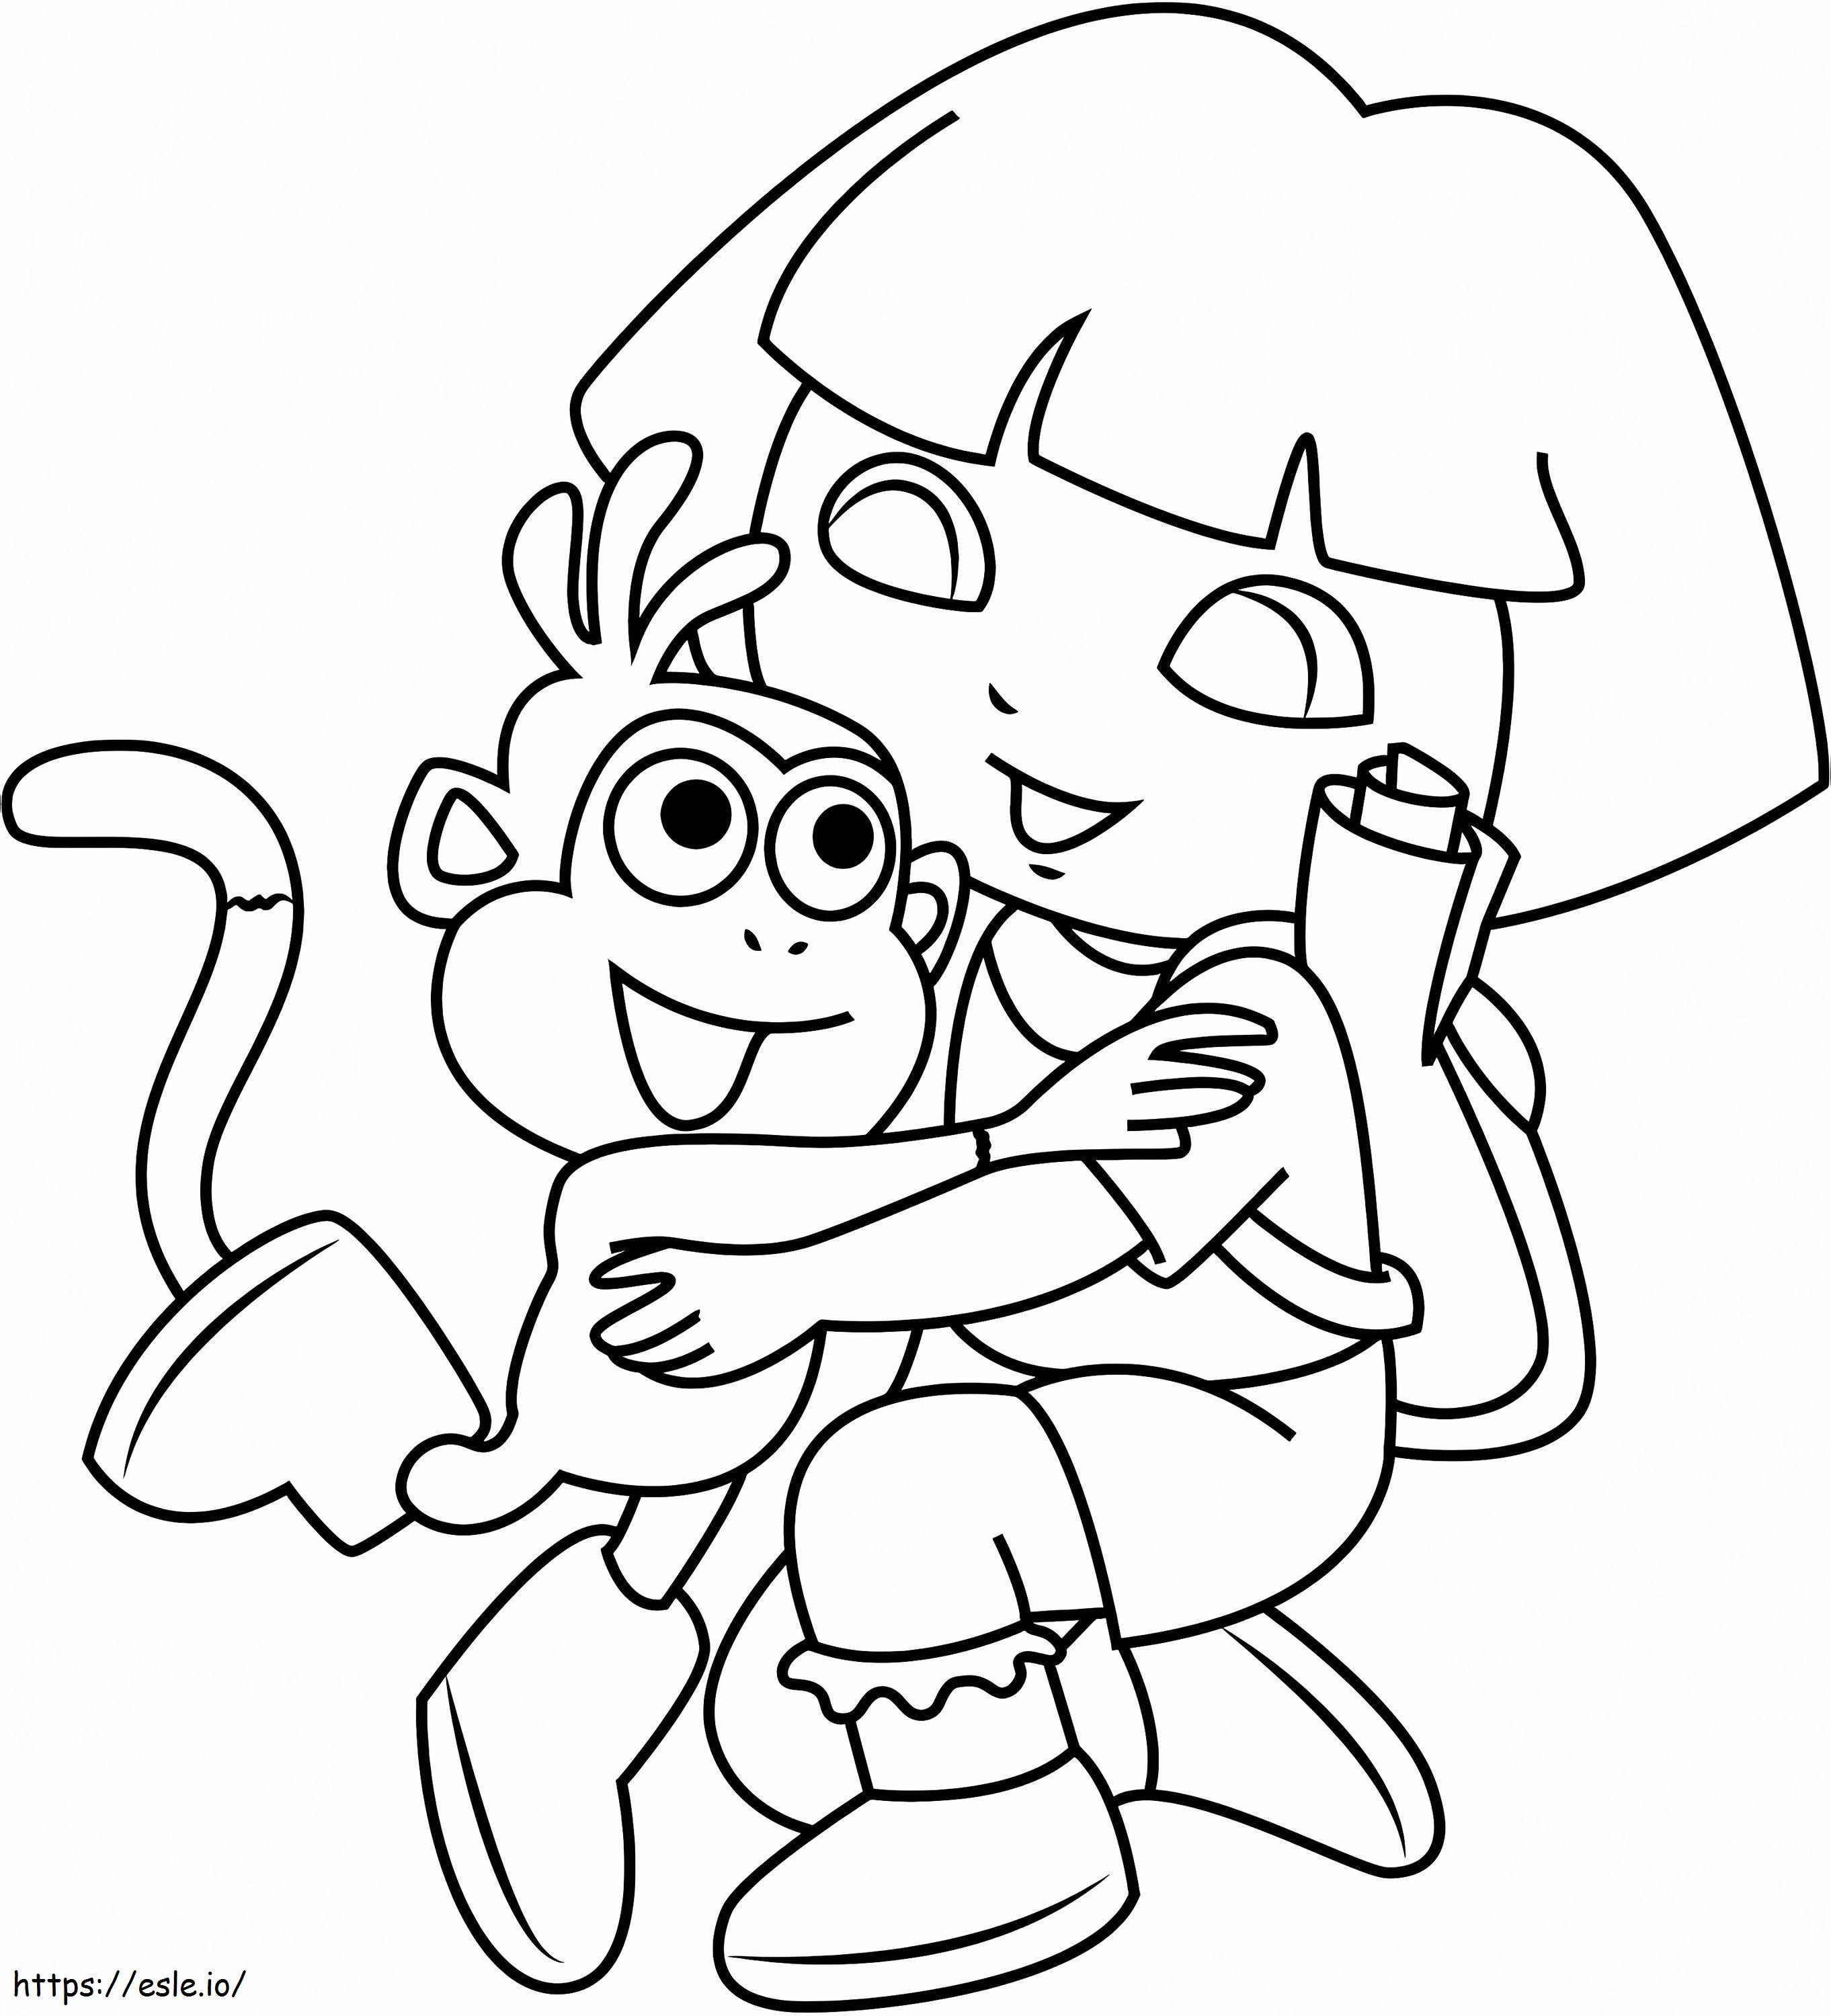 1531187806 Dora przytulająca małpkę A4 kolorowanka